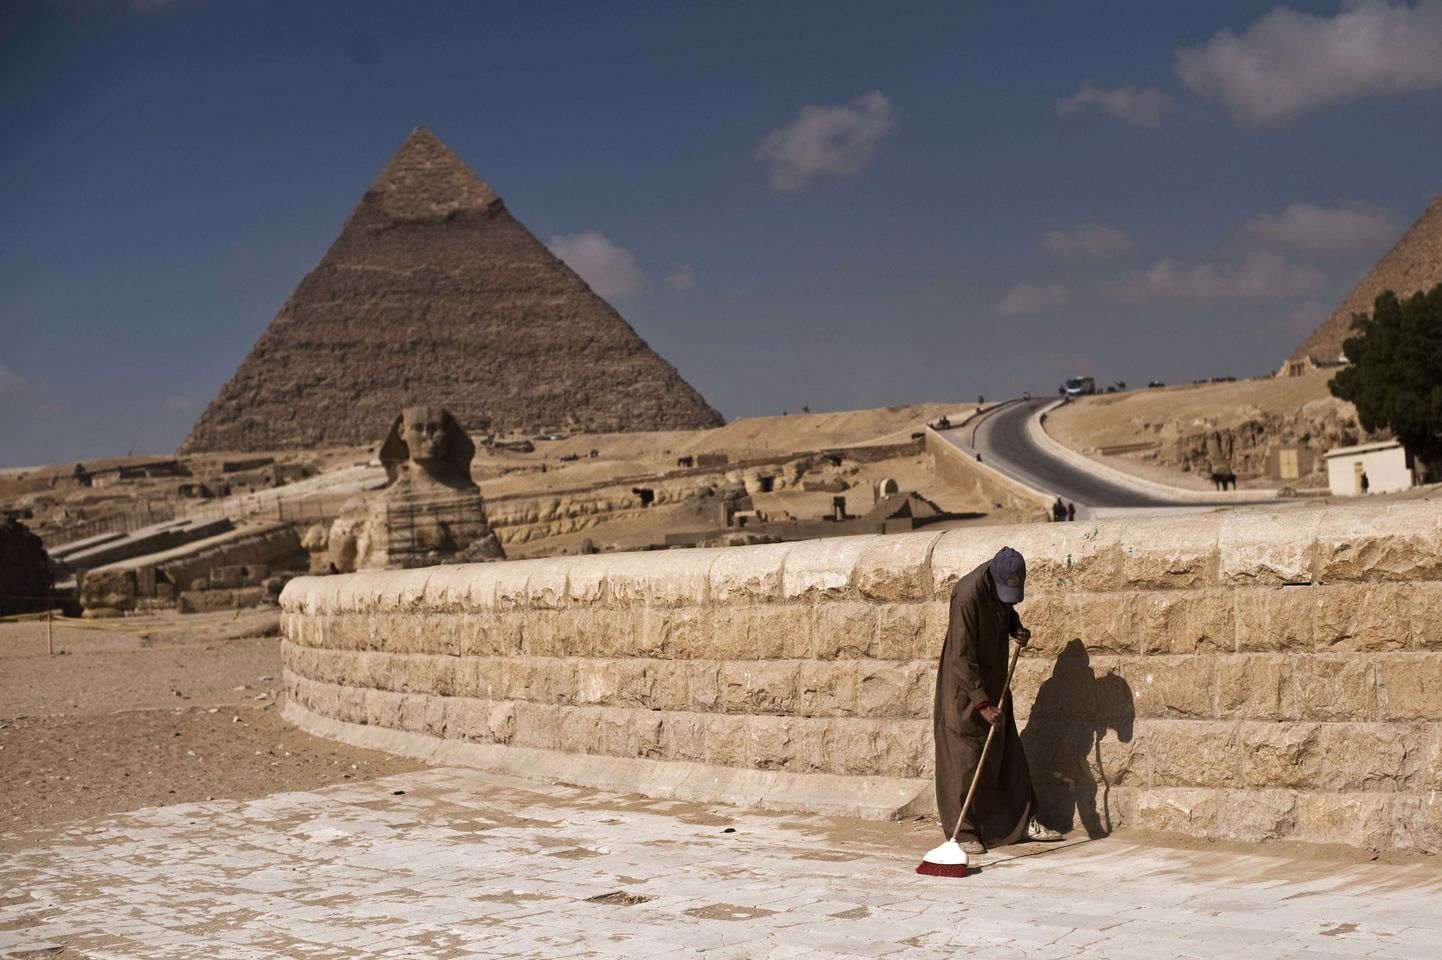 Giza püramiidide juures pole riigis valitseva äreva olukorra tõttu kuigi palju turiste. Samas on osa riike Egiptuse kuurortidesse reisimise taas turvaliseks kuulutanud.